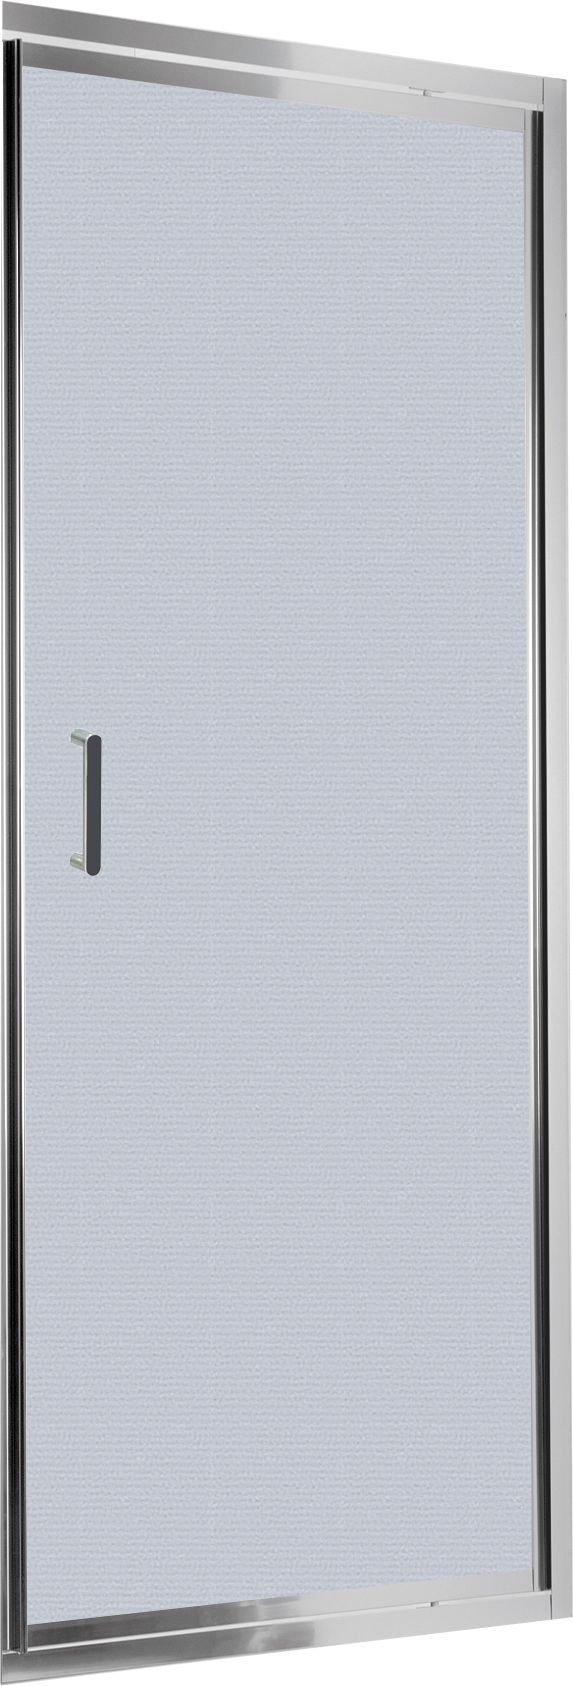 Drzwi prysznicowe wnękowe 90 cm - uchylne - KTL_611D - Główne zdjęcie produktowe